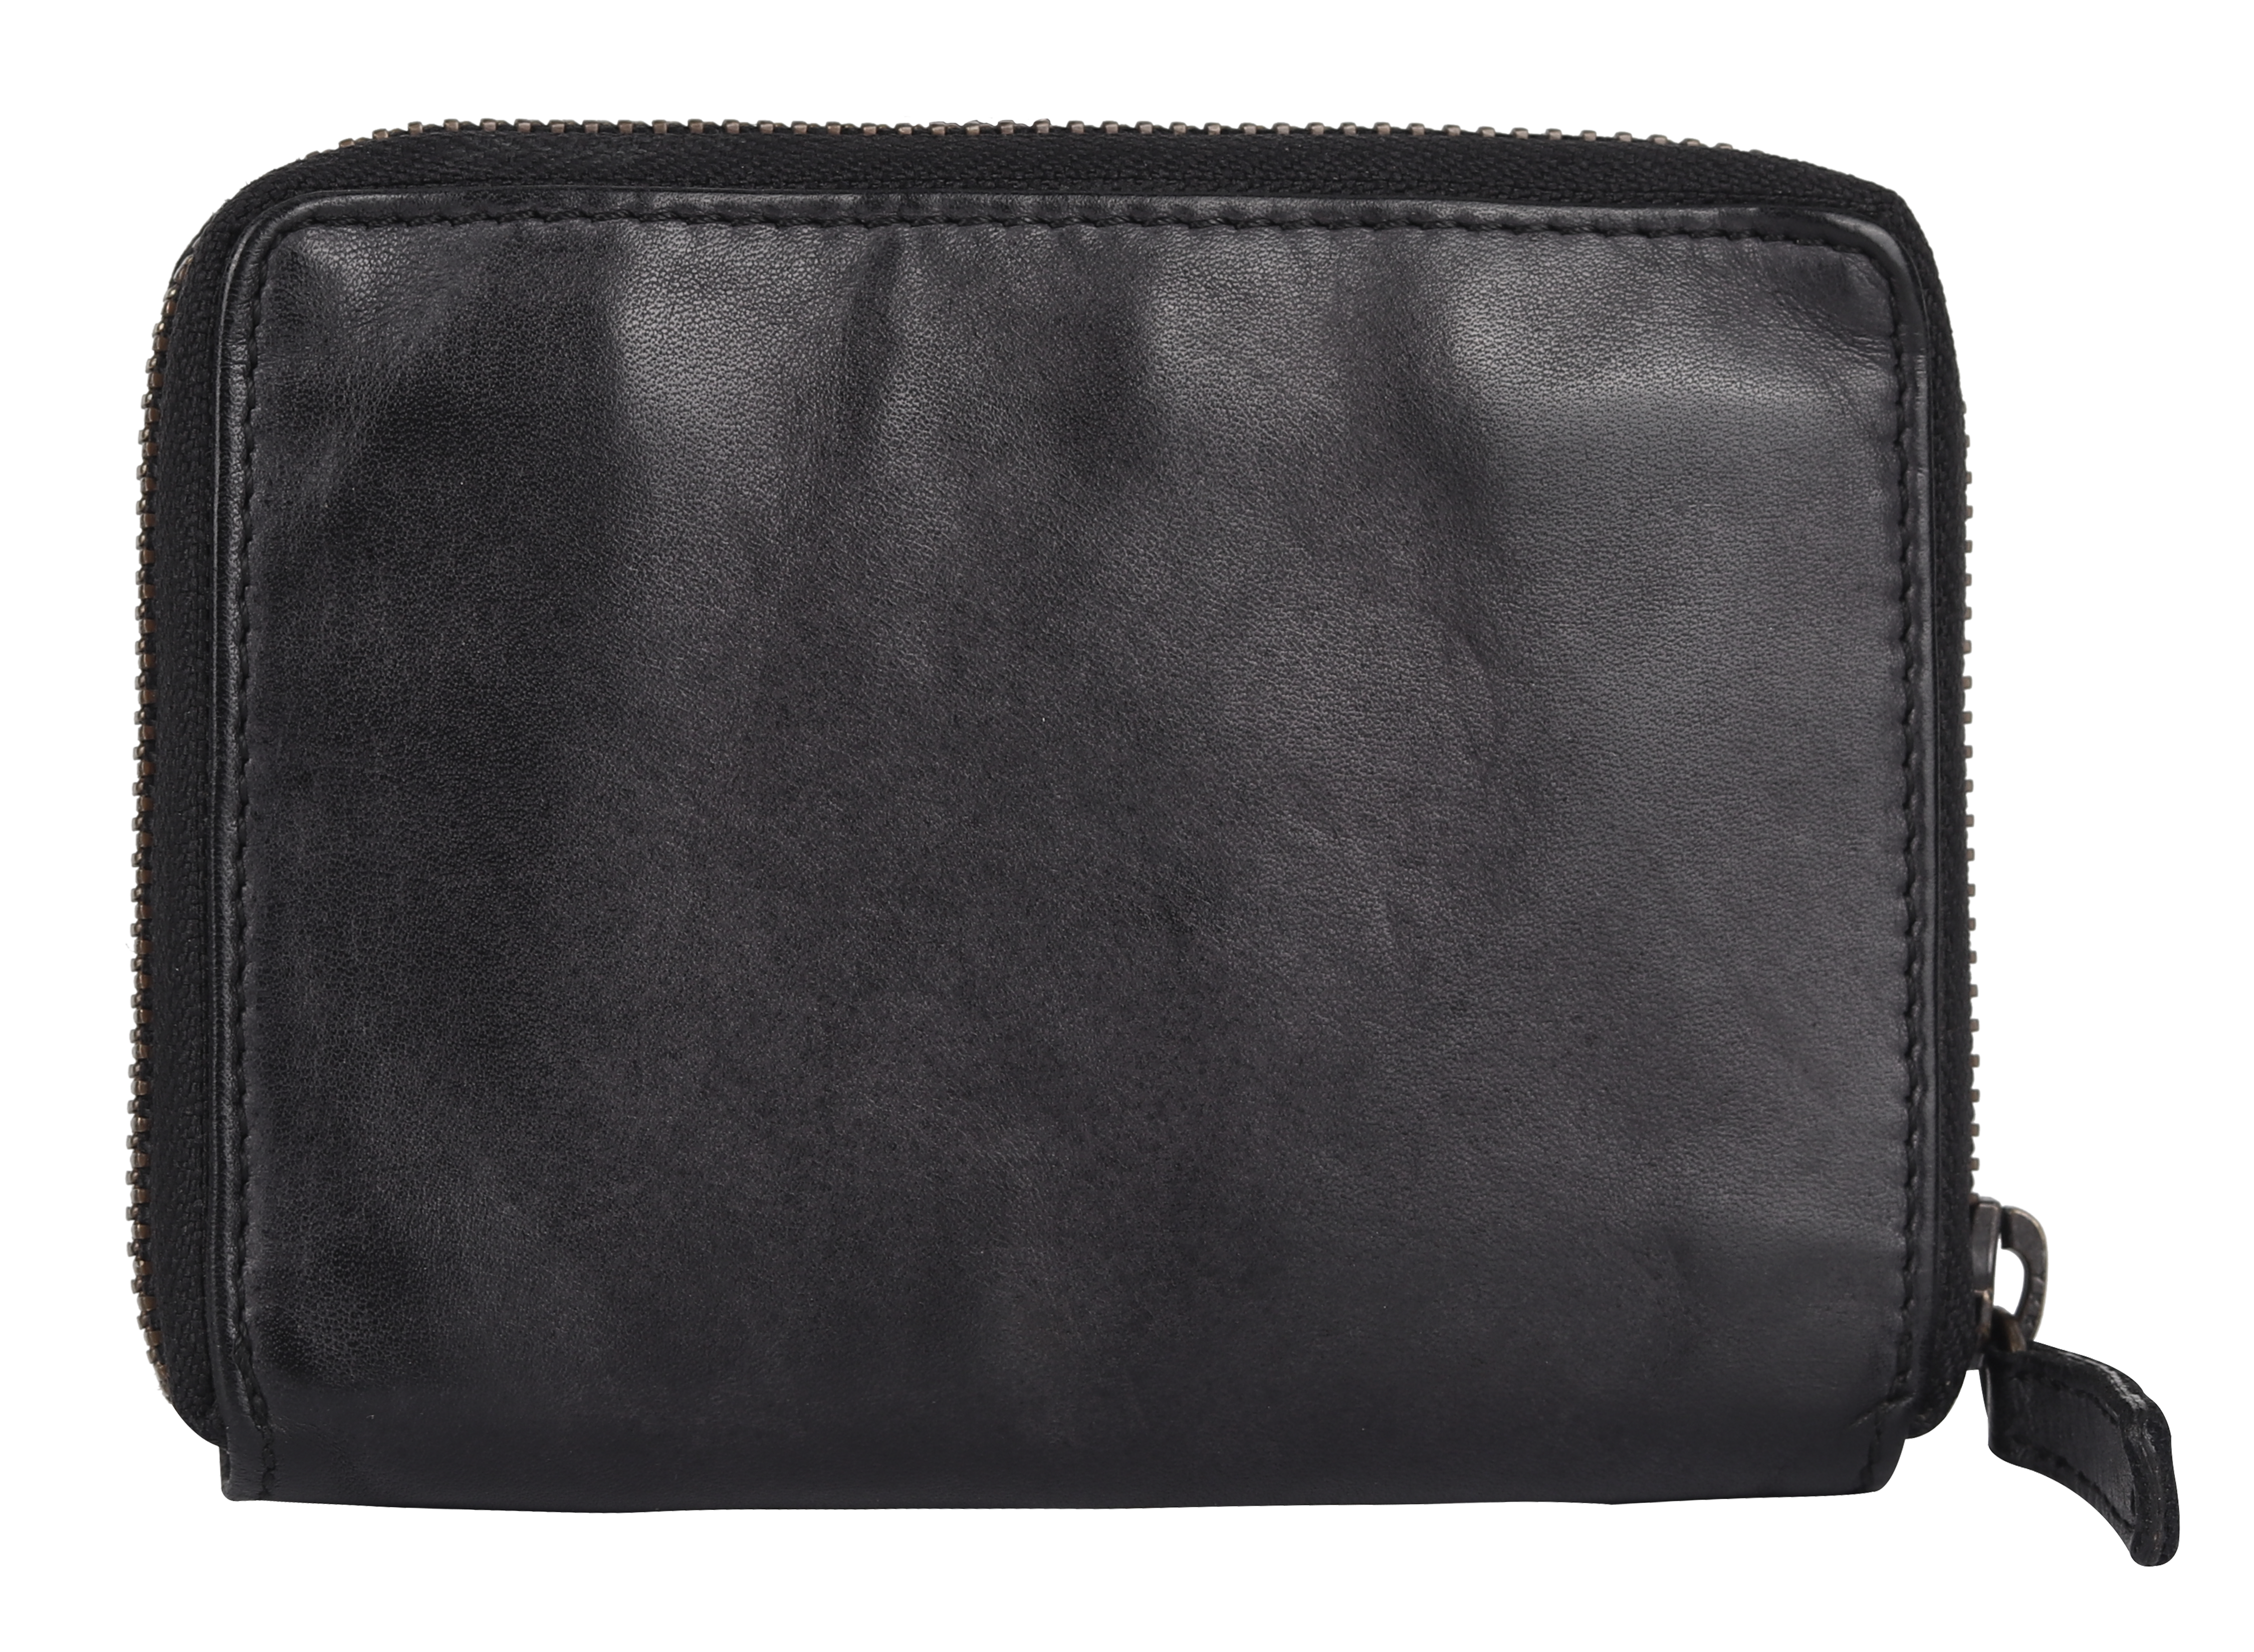 BOL/Open Road Women's Accordian Zip Around Leather Wallet